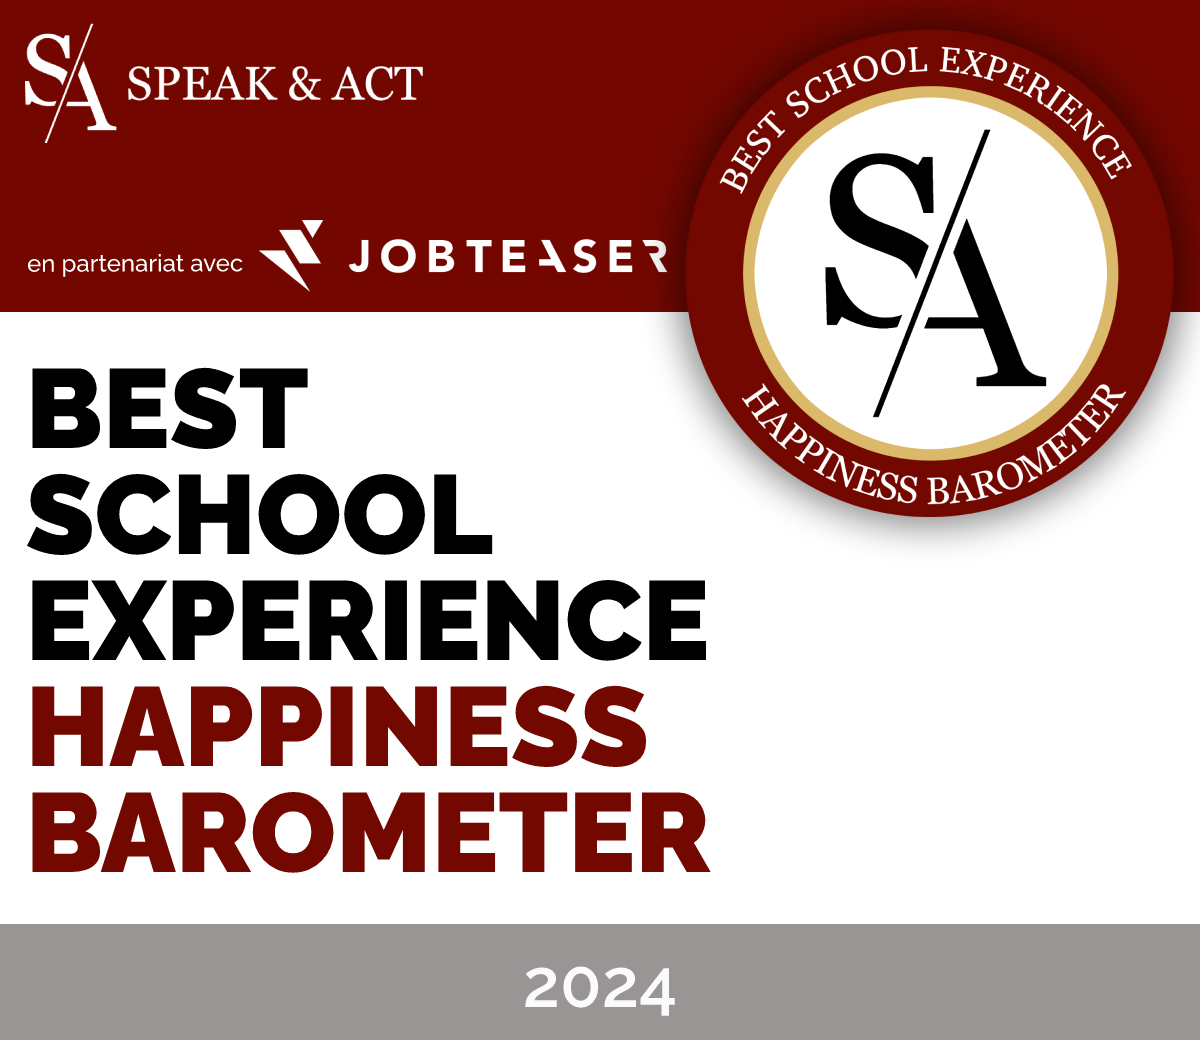 L’ISCOD a obtenu de nouveau cette année le label Best School Experience - Happiness Barometer 2024 de Speak & Act 